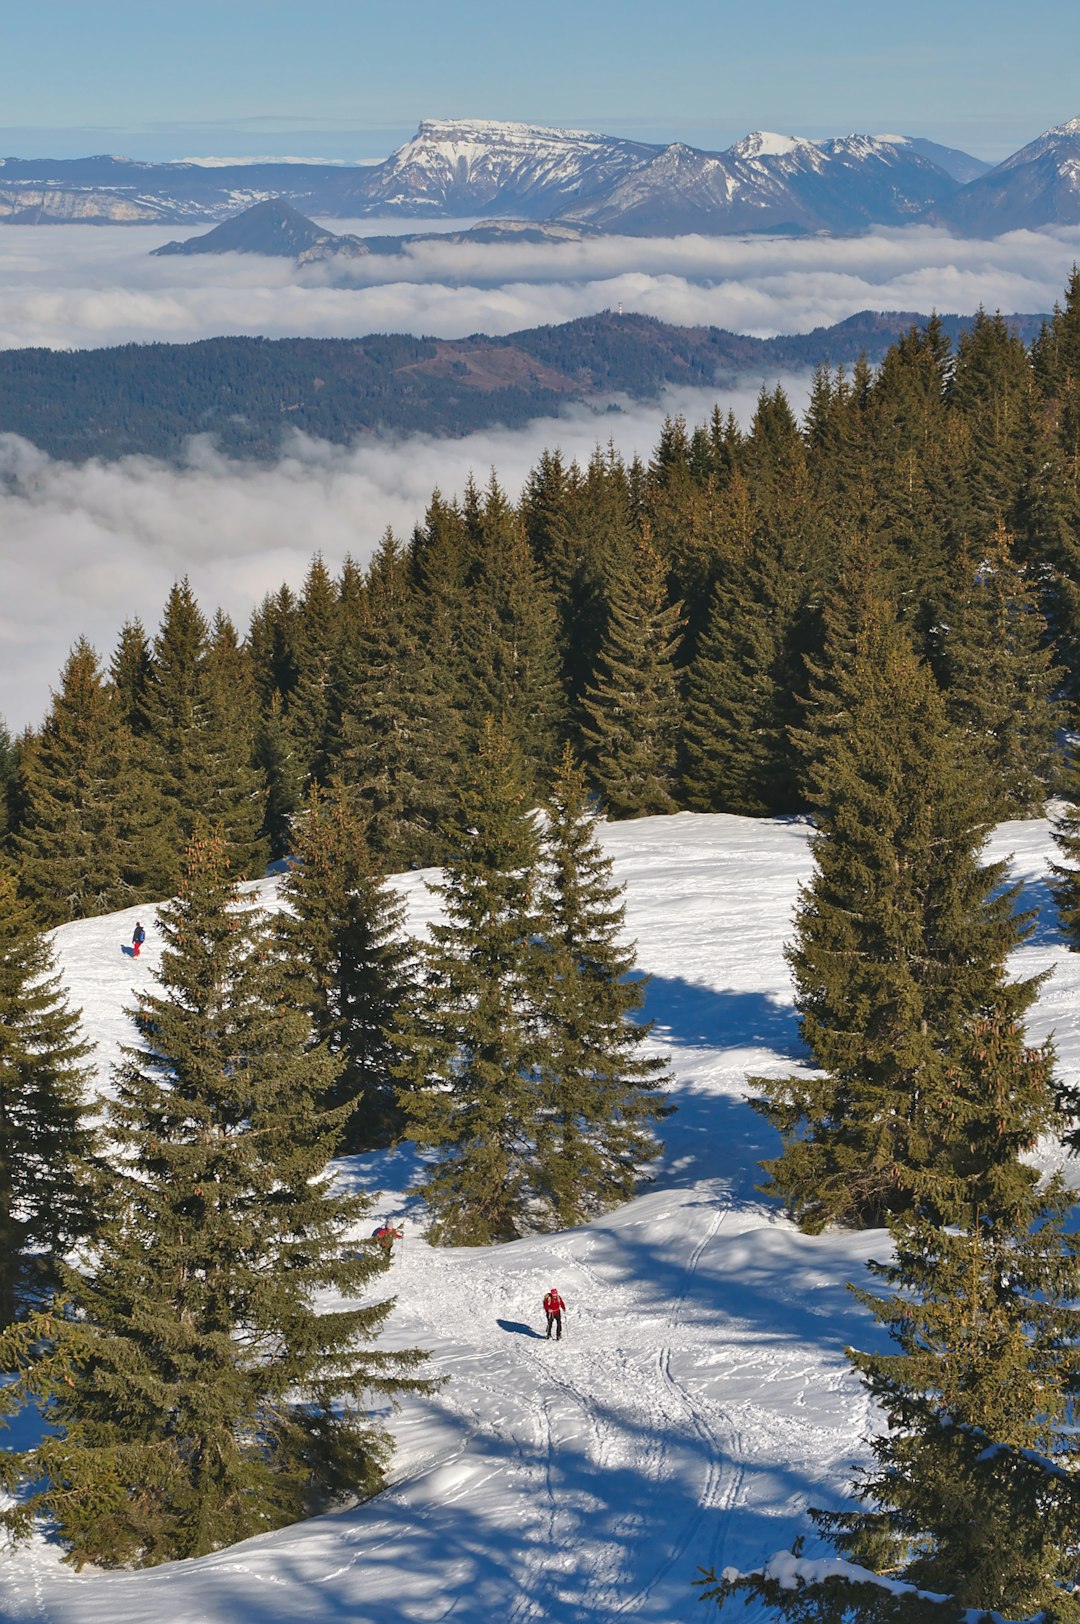 Mountain range photo spot Domaine de ski Nordique du Barioz Les Deux Alpes